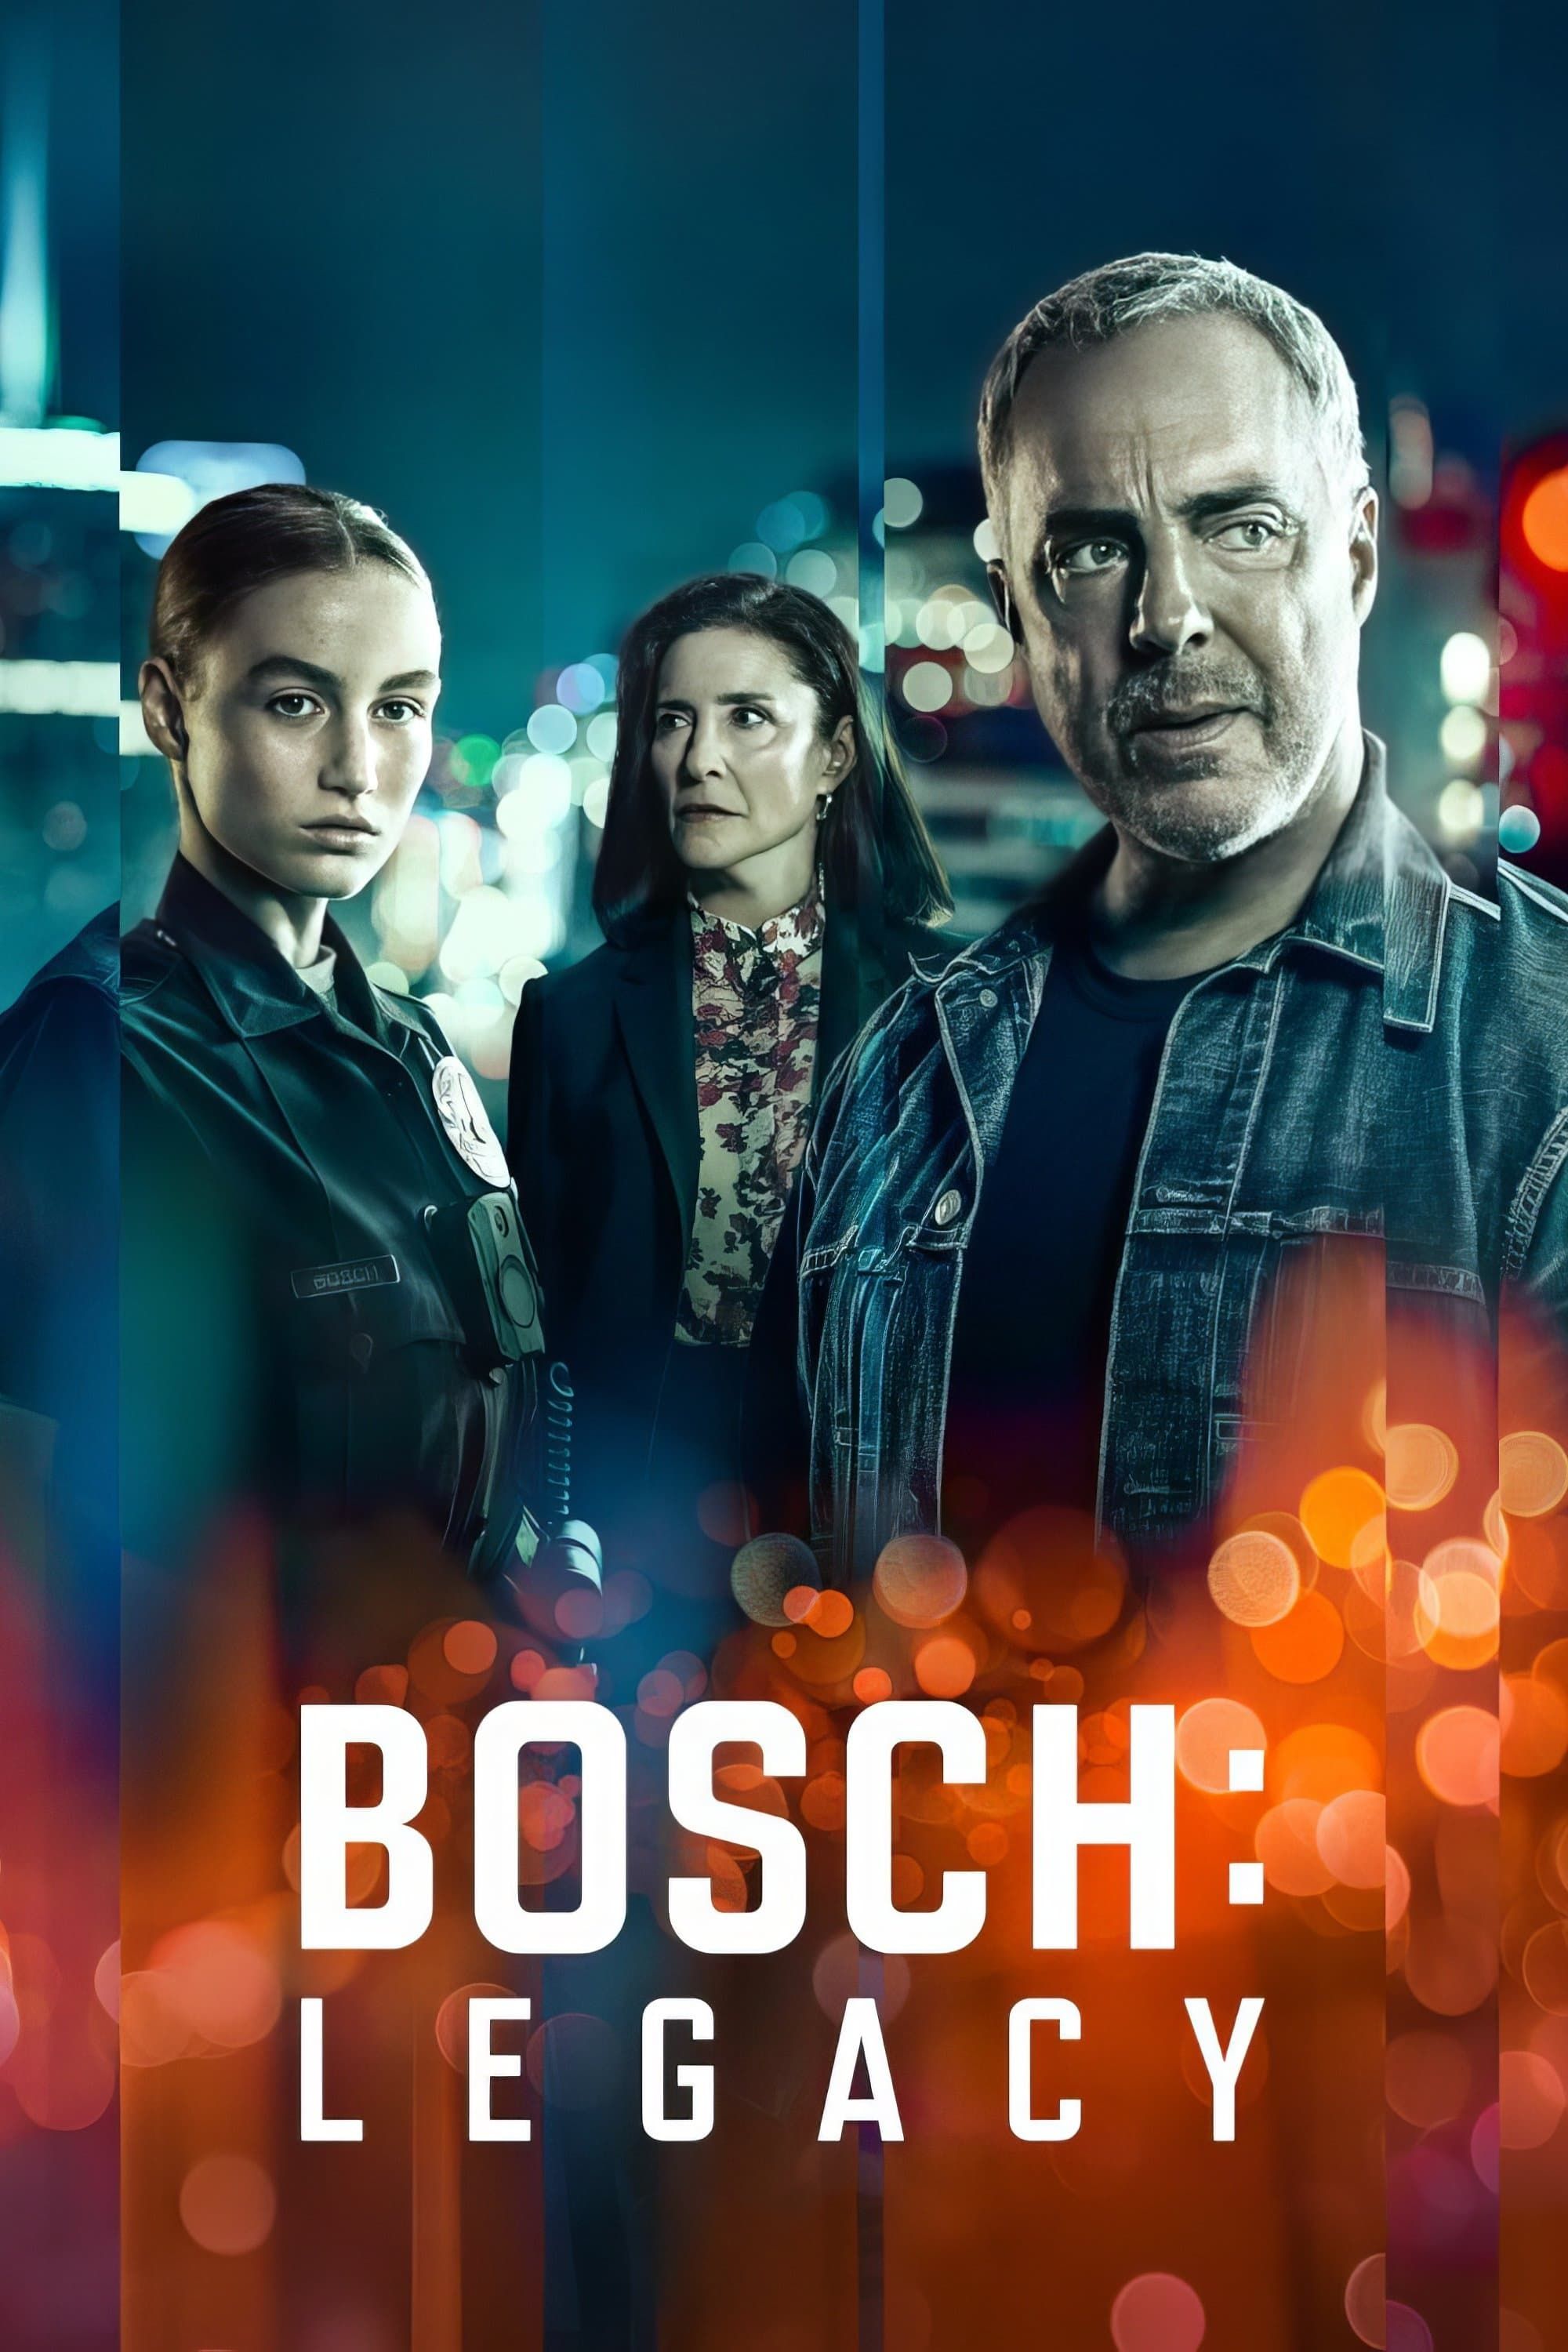 Bosch: Legacy' Renewed For Season 3 By  FreeVee : r/Freevee